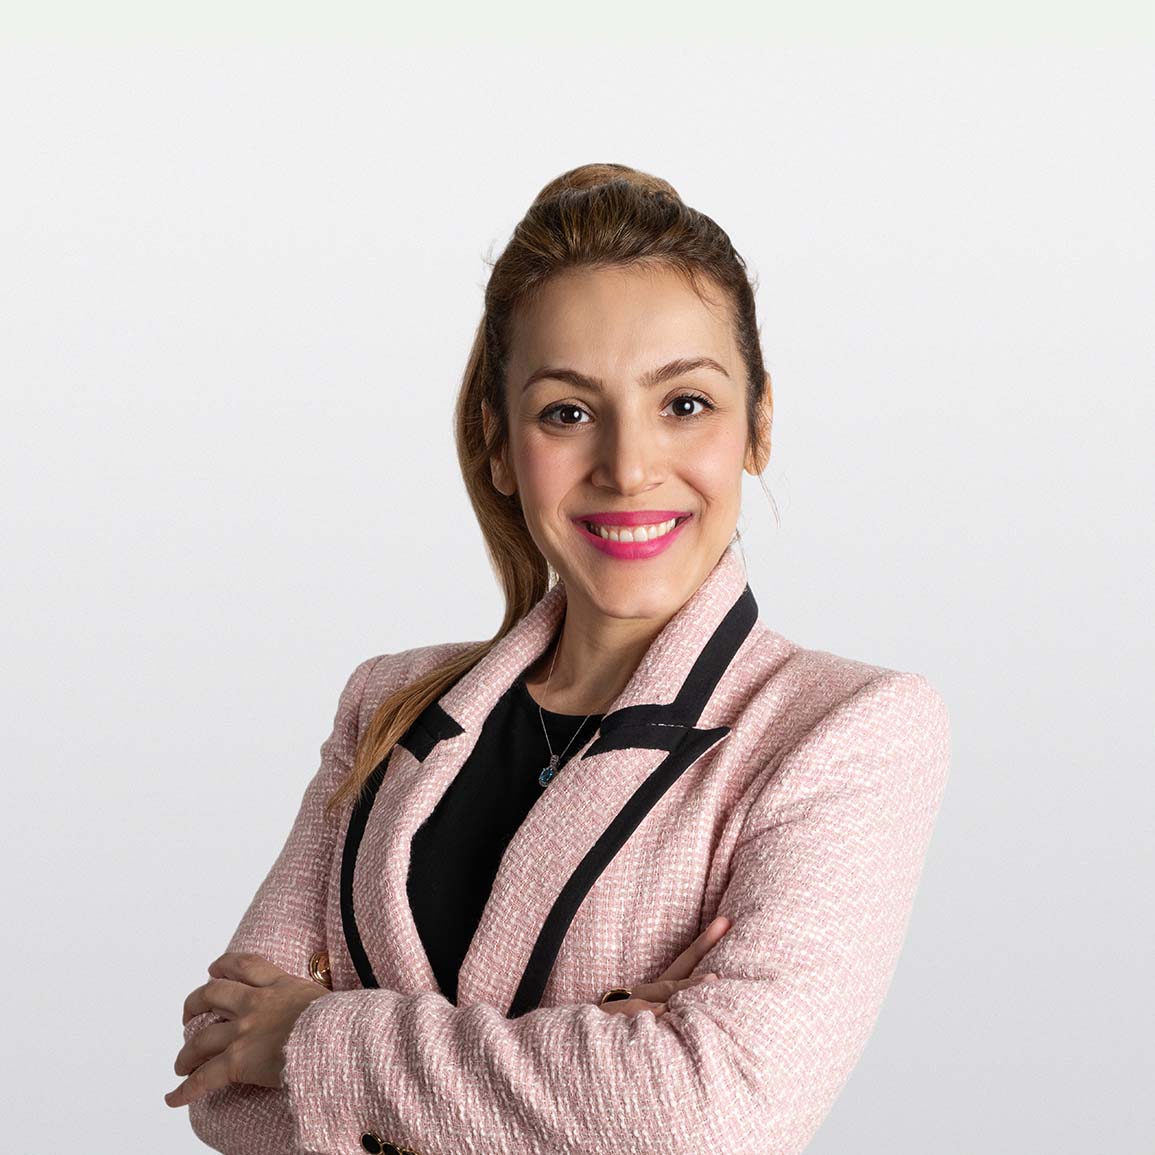 Image of Azi Sadighi Private Banking Advisor on white background